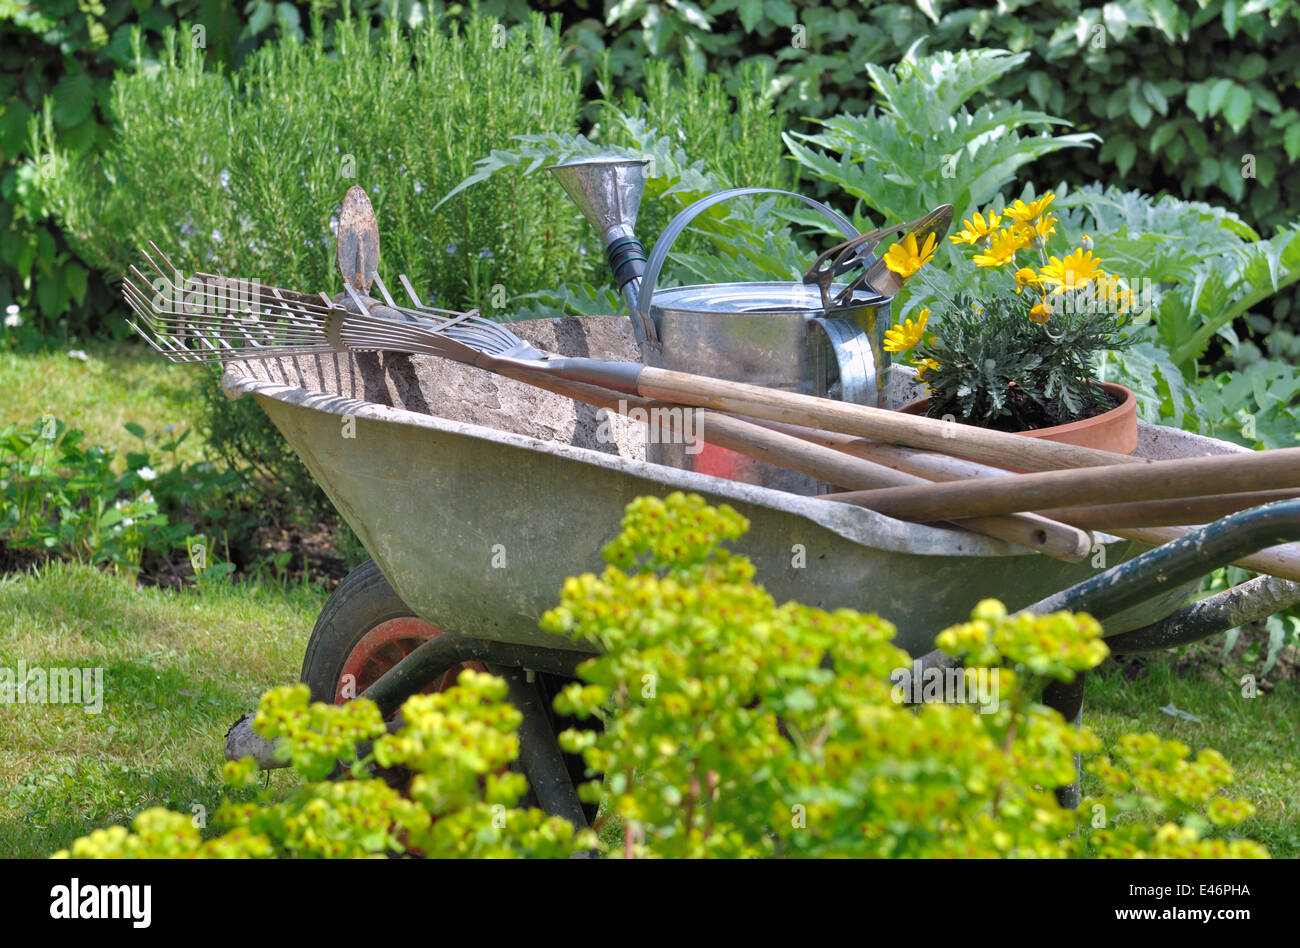 Carretilla De Jardinería Carga De Hojas Secas : Concepto De Limpieza De  Jardines Al Aire Libre Y De Temporada Foto de archivo - Imagen de rueda,  herramienta: 204979504